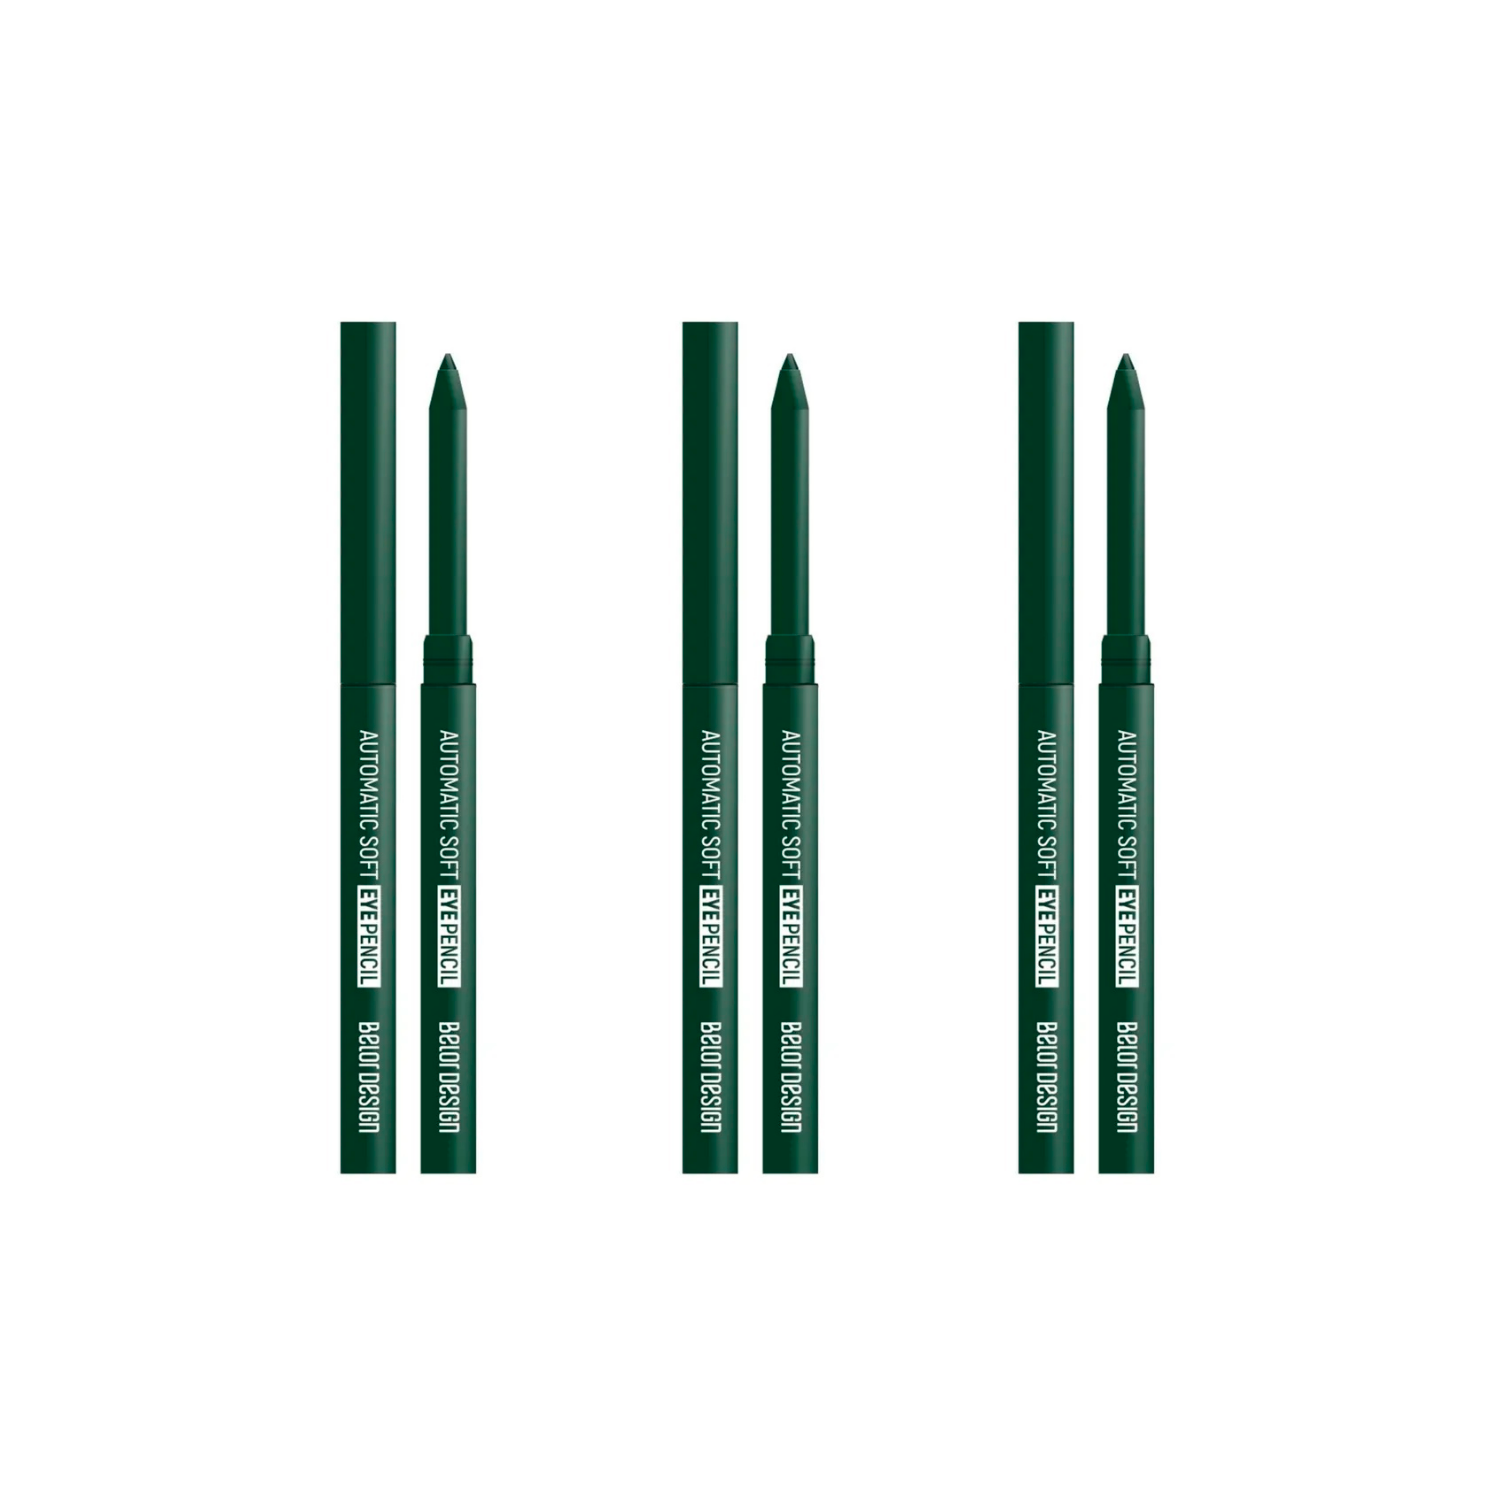 Карандаш для глаз Belor Design Automatic Soft Тон 304 Зеленый, 3 шт. пенал мягкий 2 отделения 100 х 200 х 70 мм объёмный черно зеленый